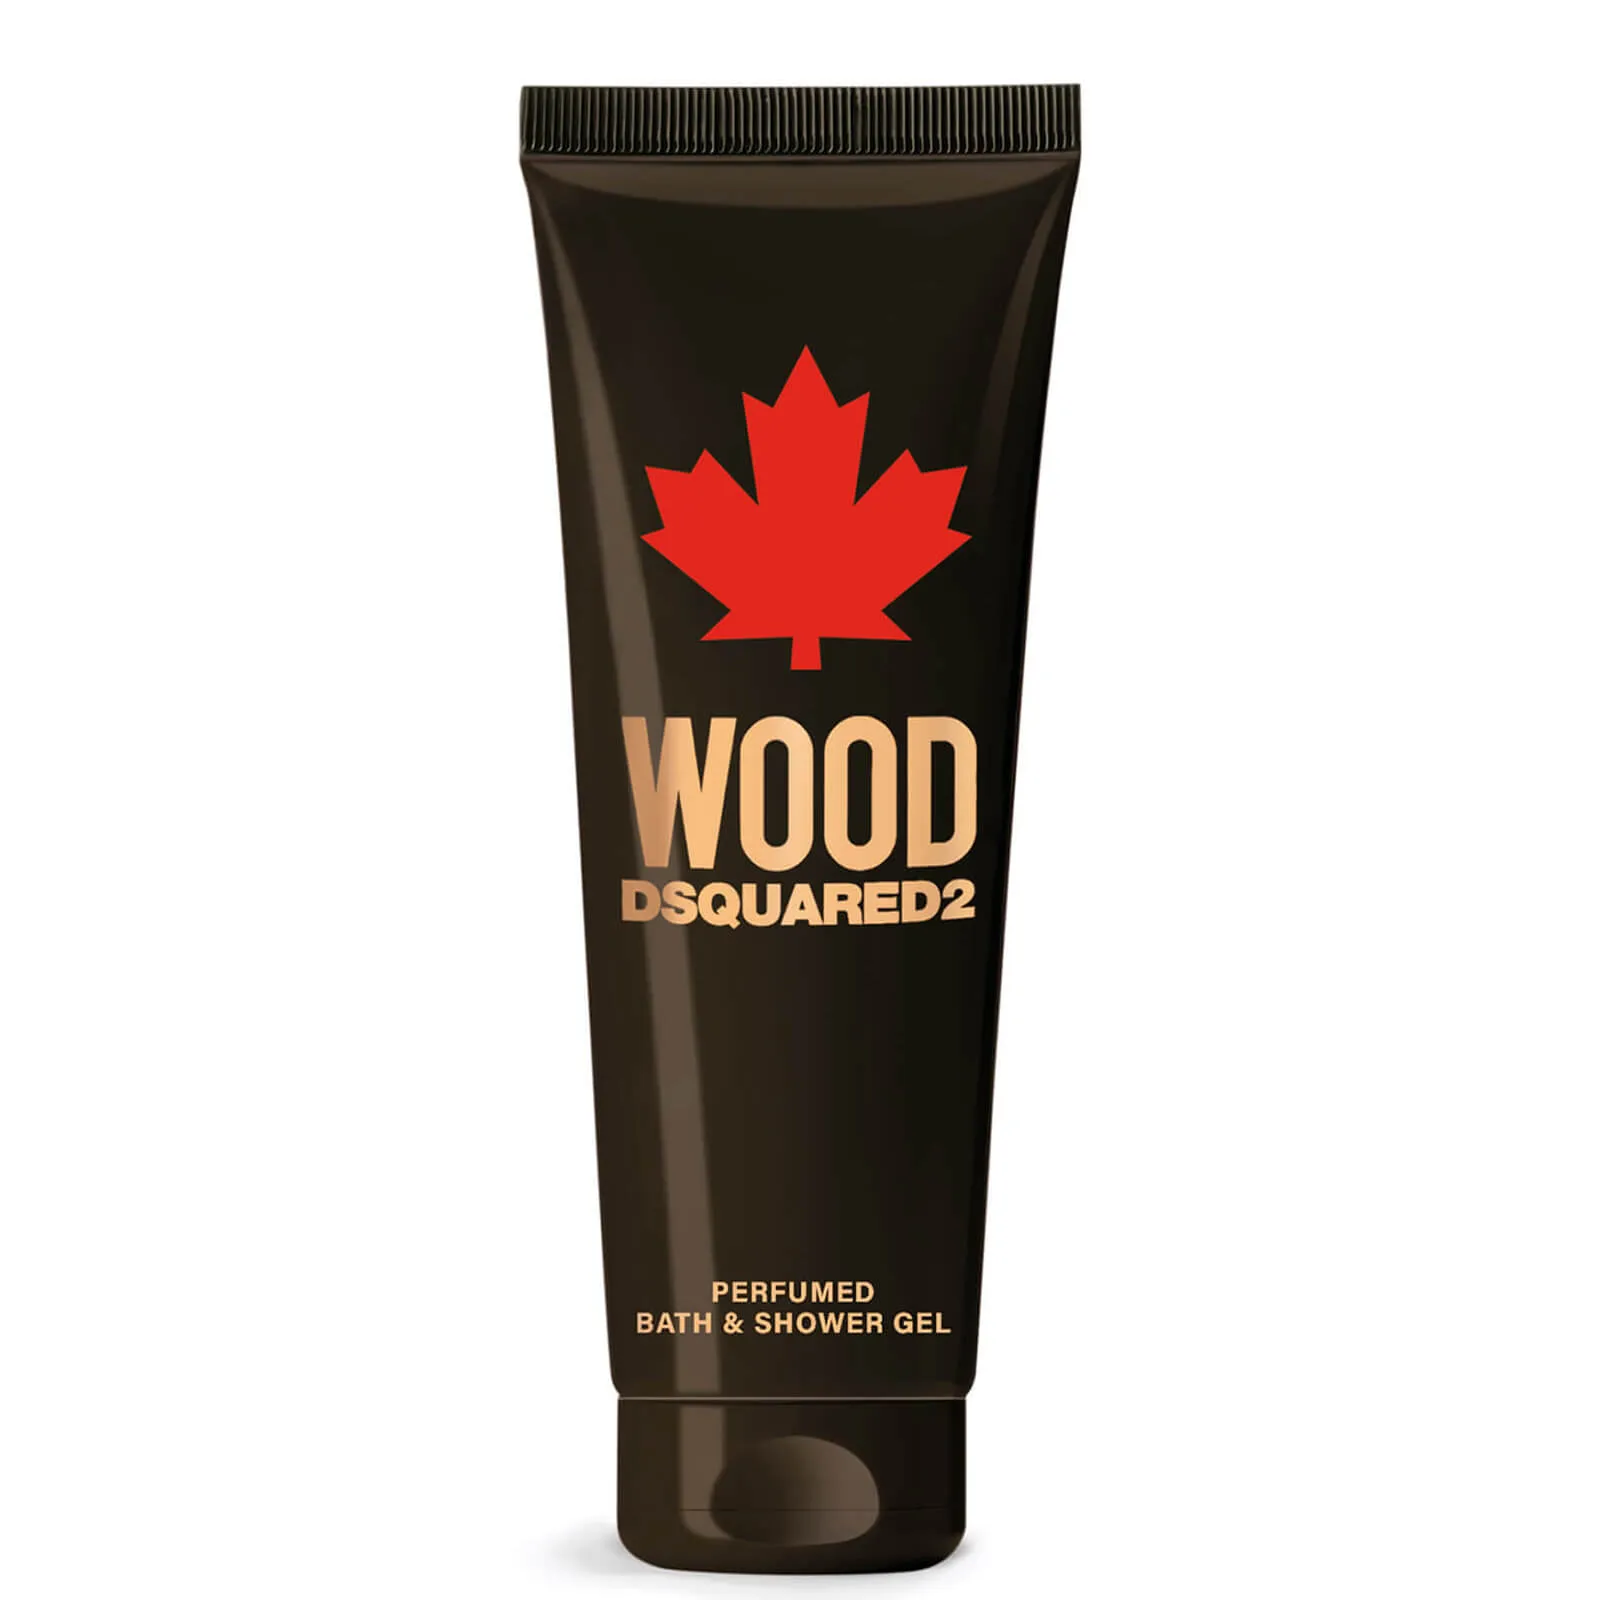  D2 Wood Pour Homme Shower Gel 250ml